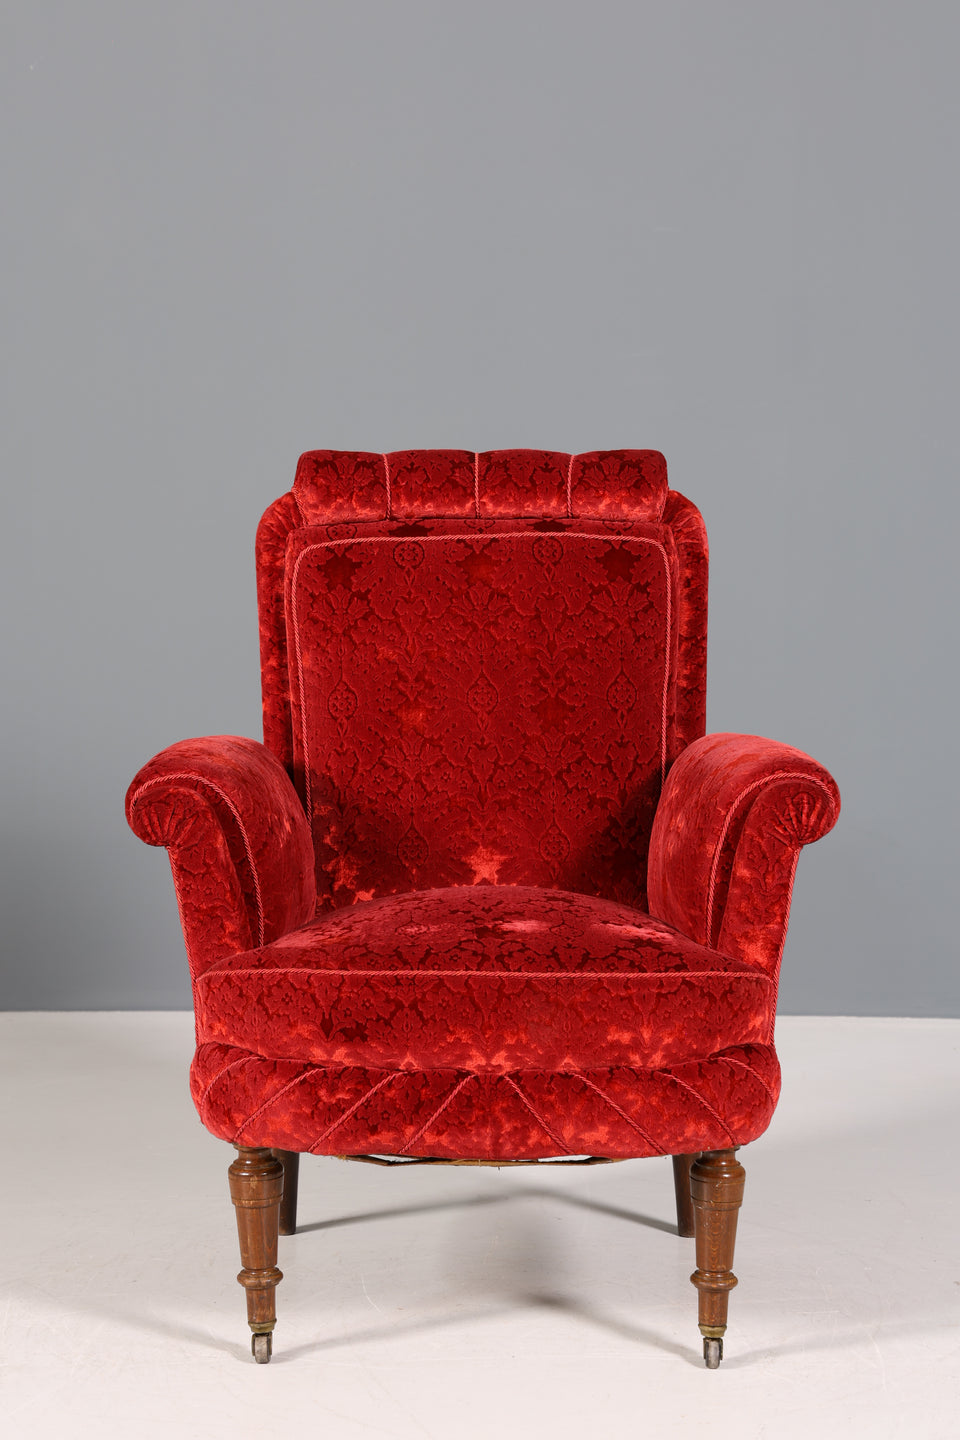 Wunderschöner Jugendstil Sessel Samt Stoff Armlehnsessel Antik um 1910 2 von 2